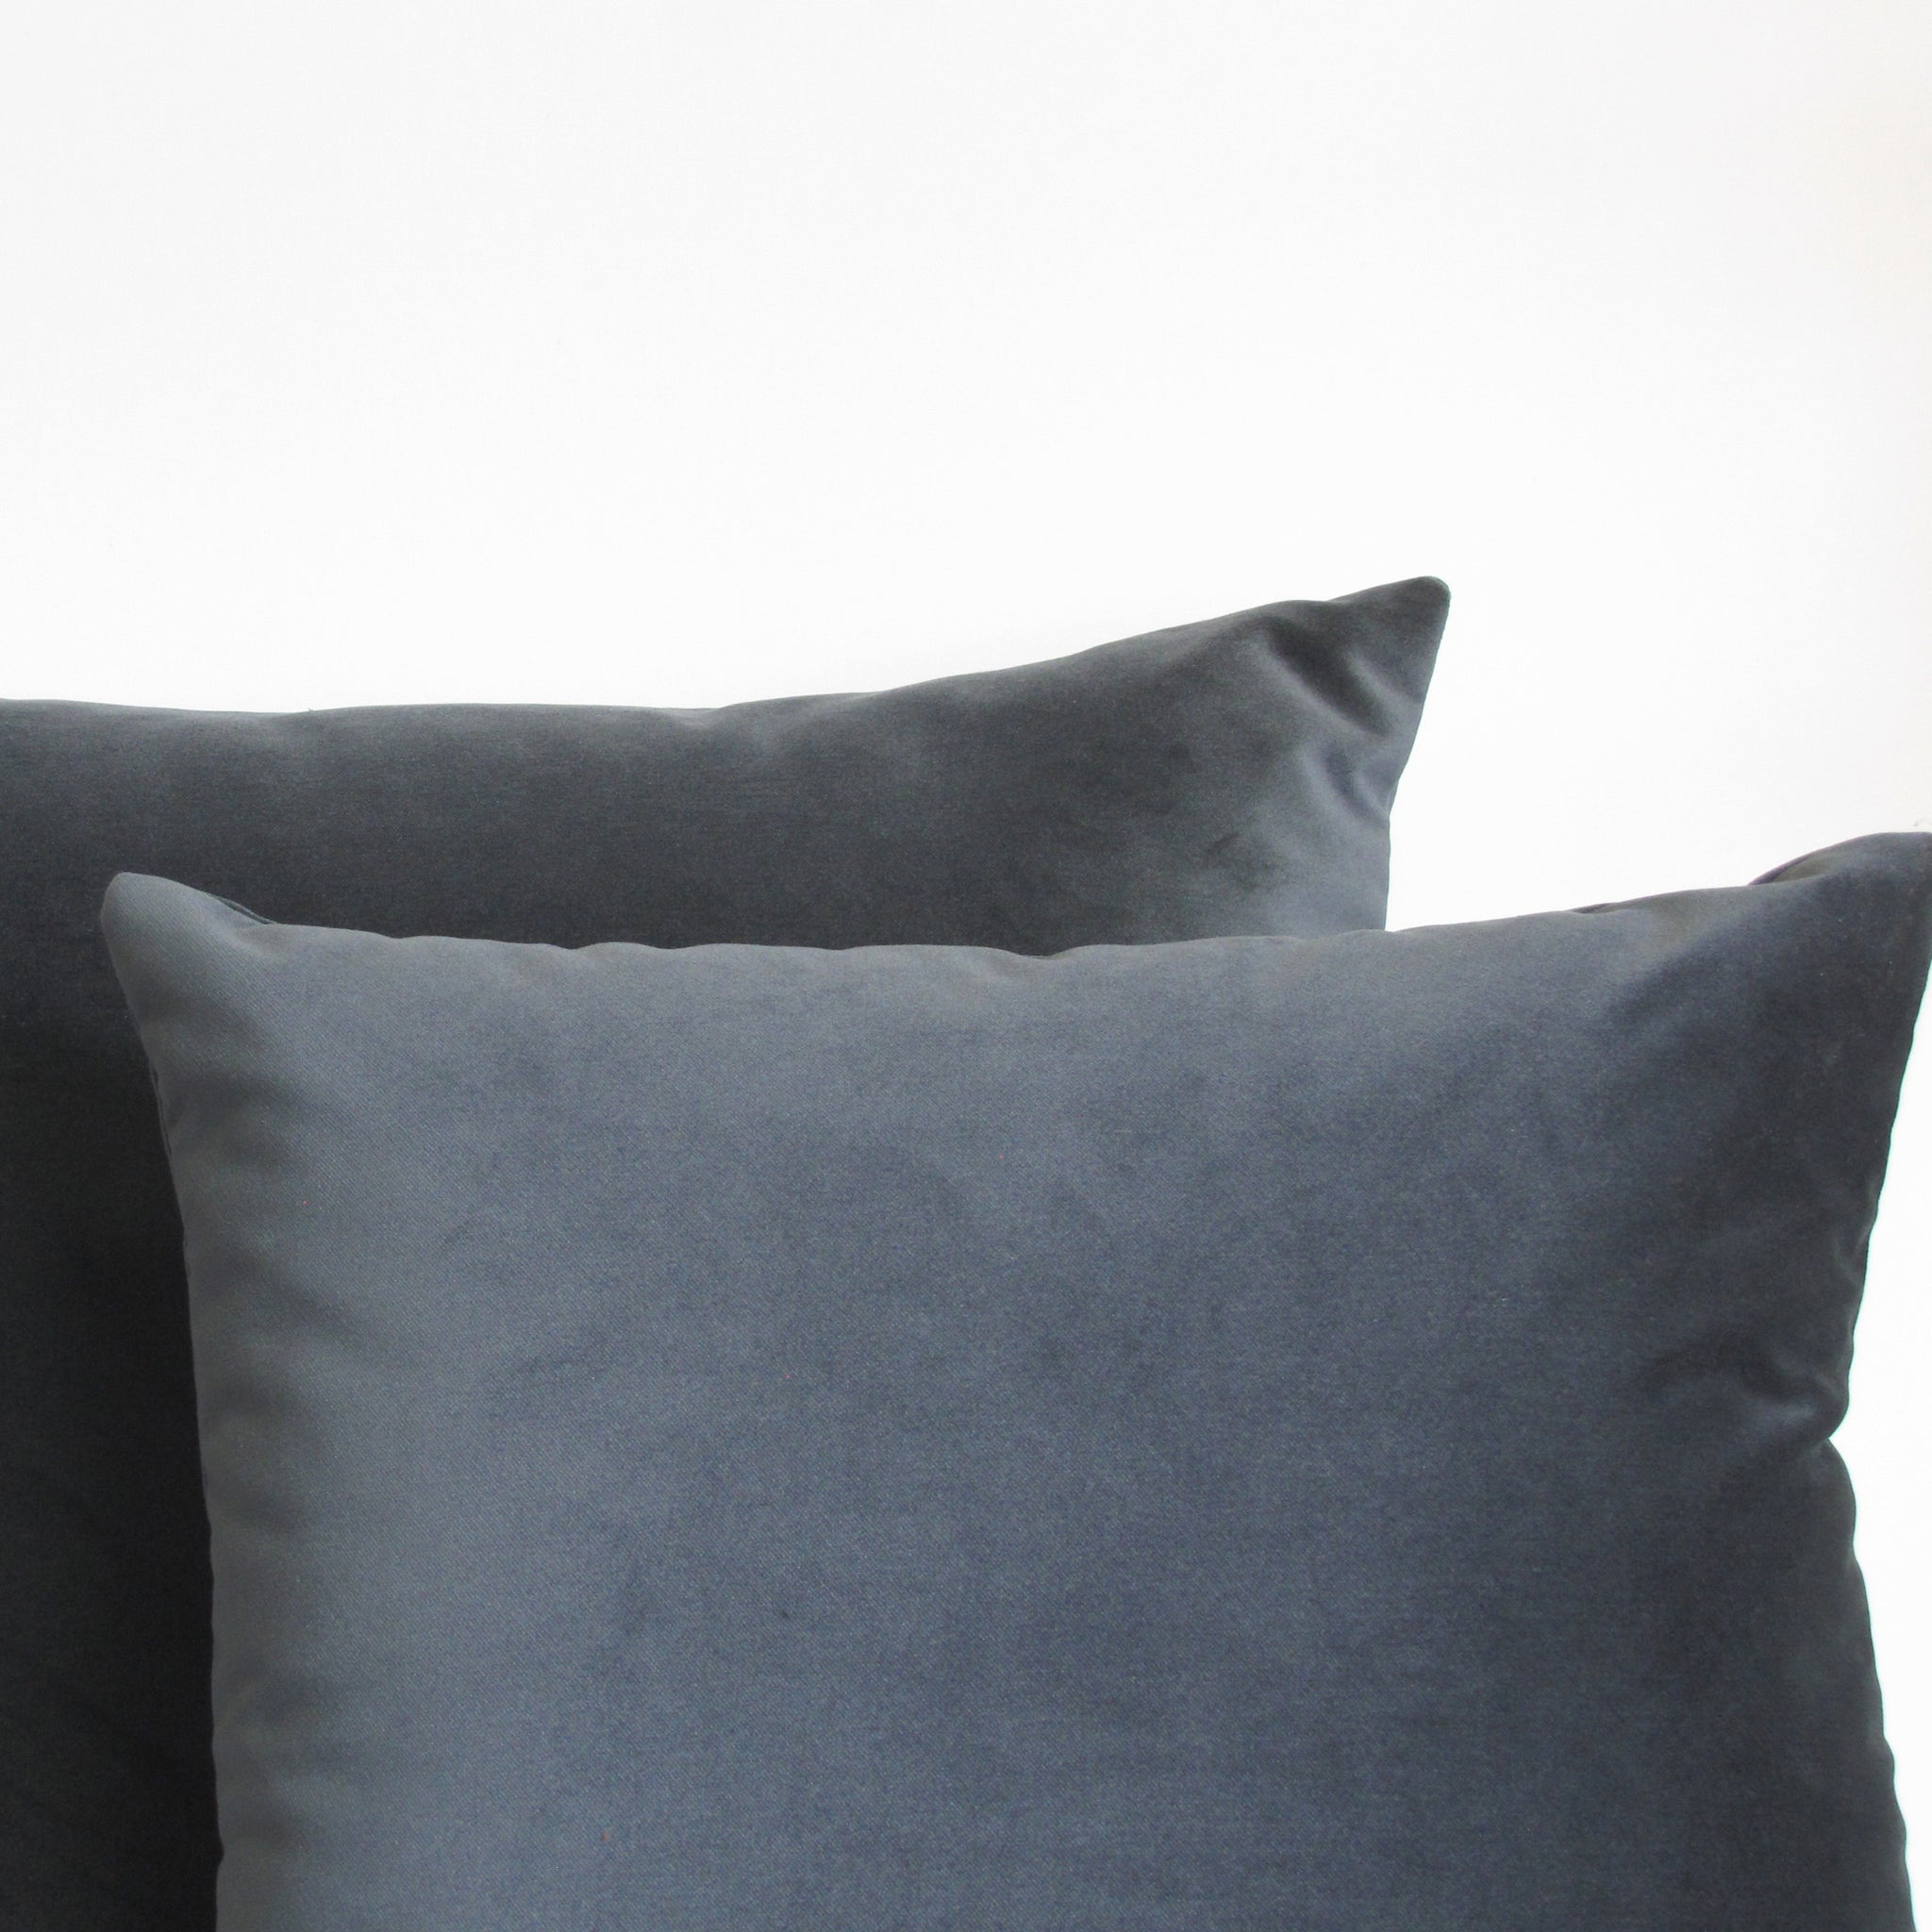 Made to order granite grey velvet cushion cover